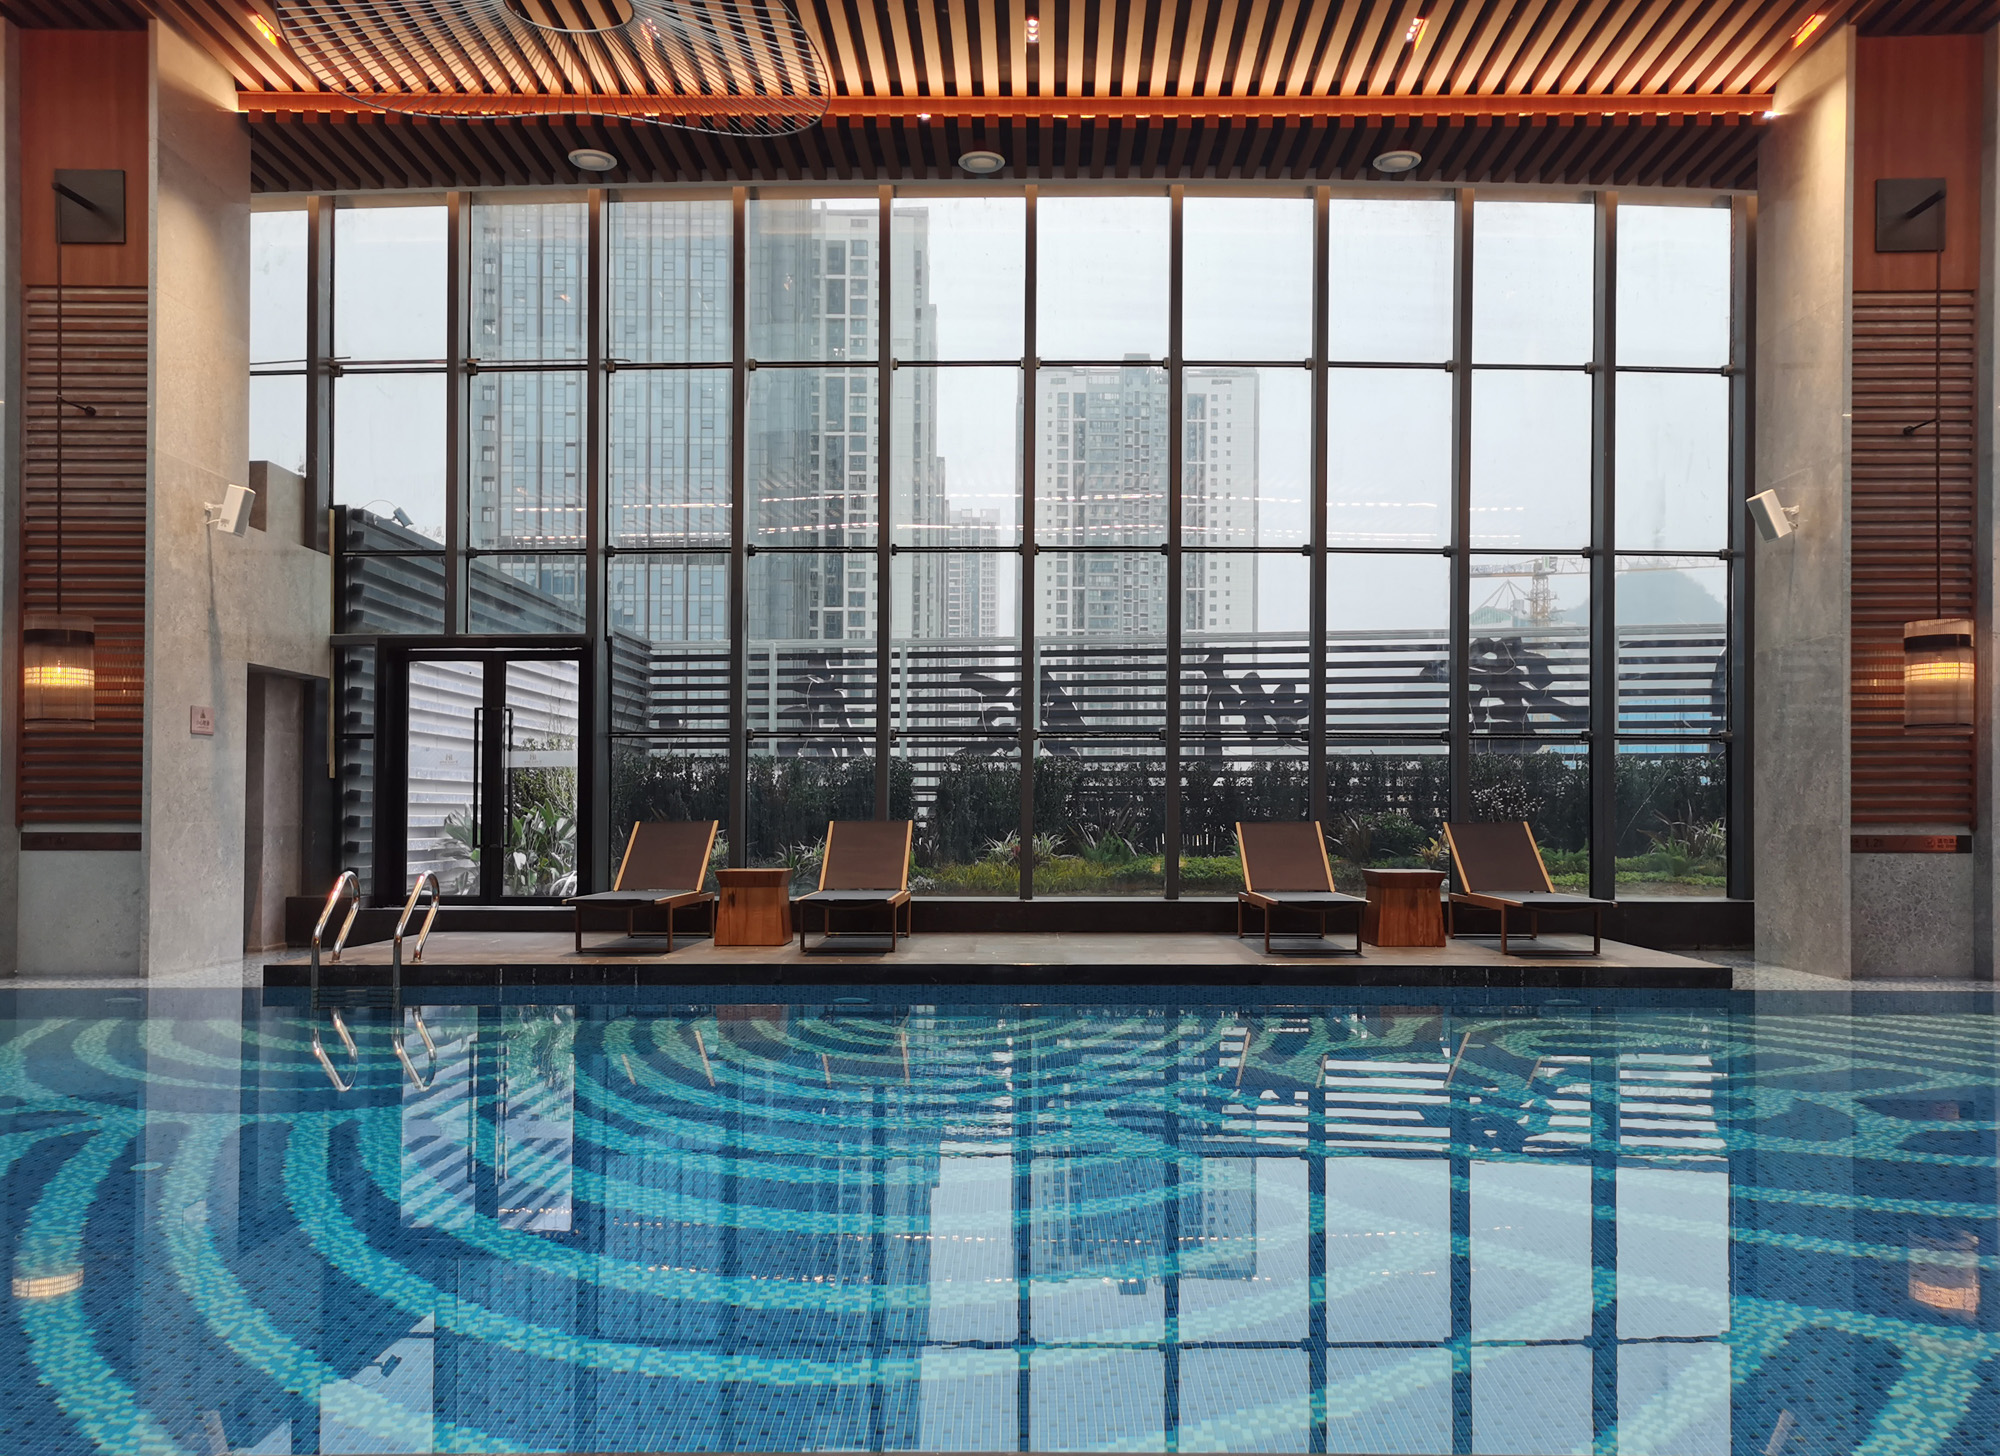 斐燃官网:全国五星级酒店健身、游泳,超燃运动聚集地